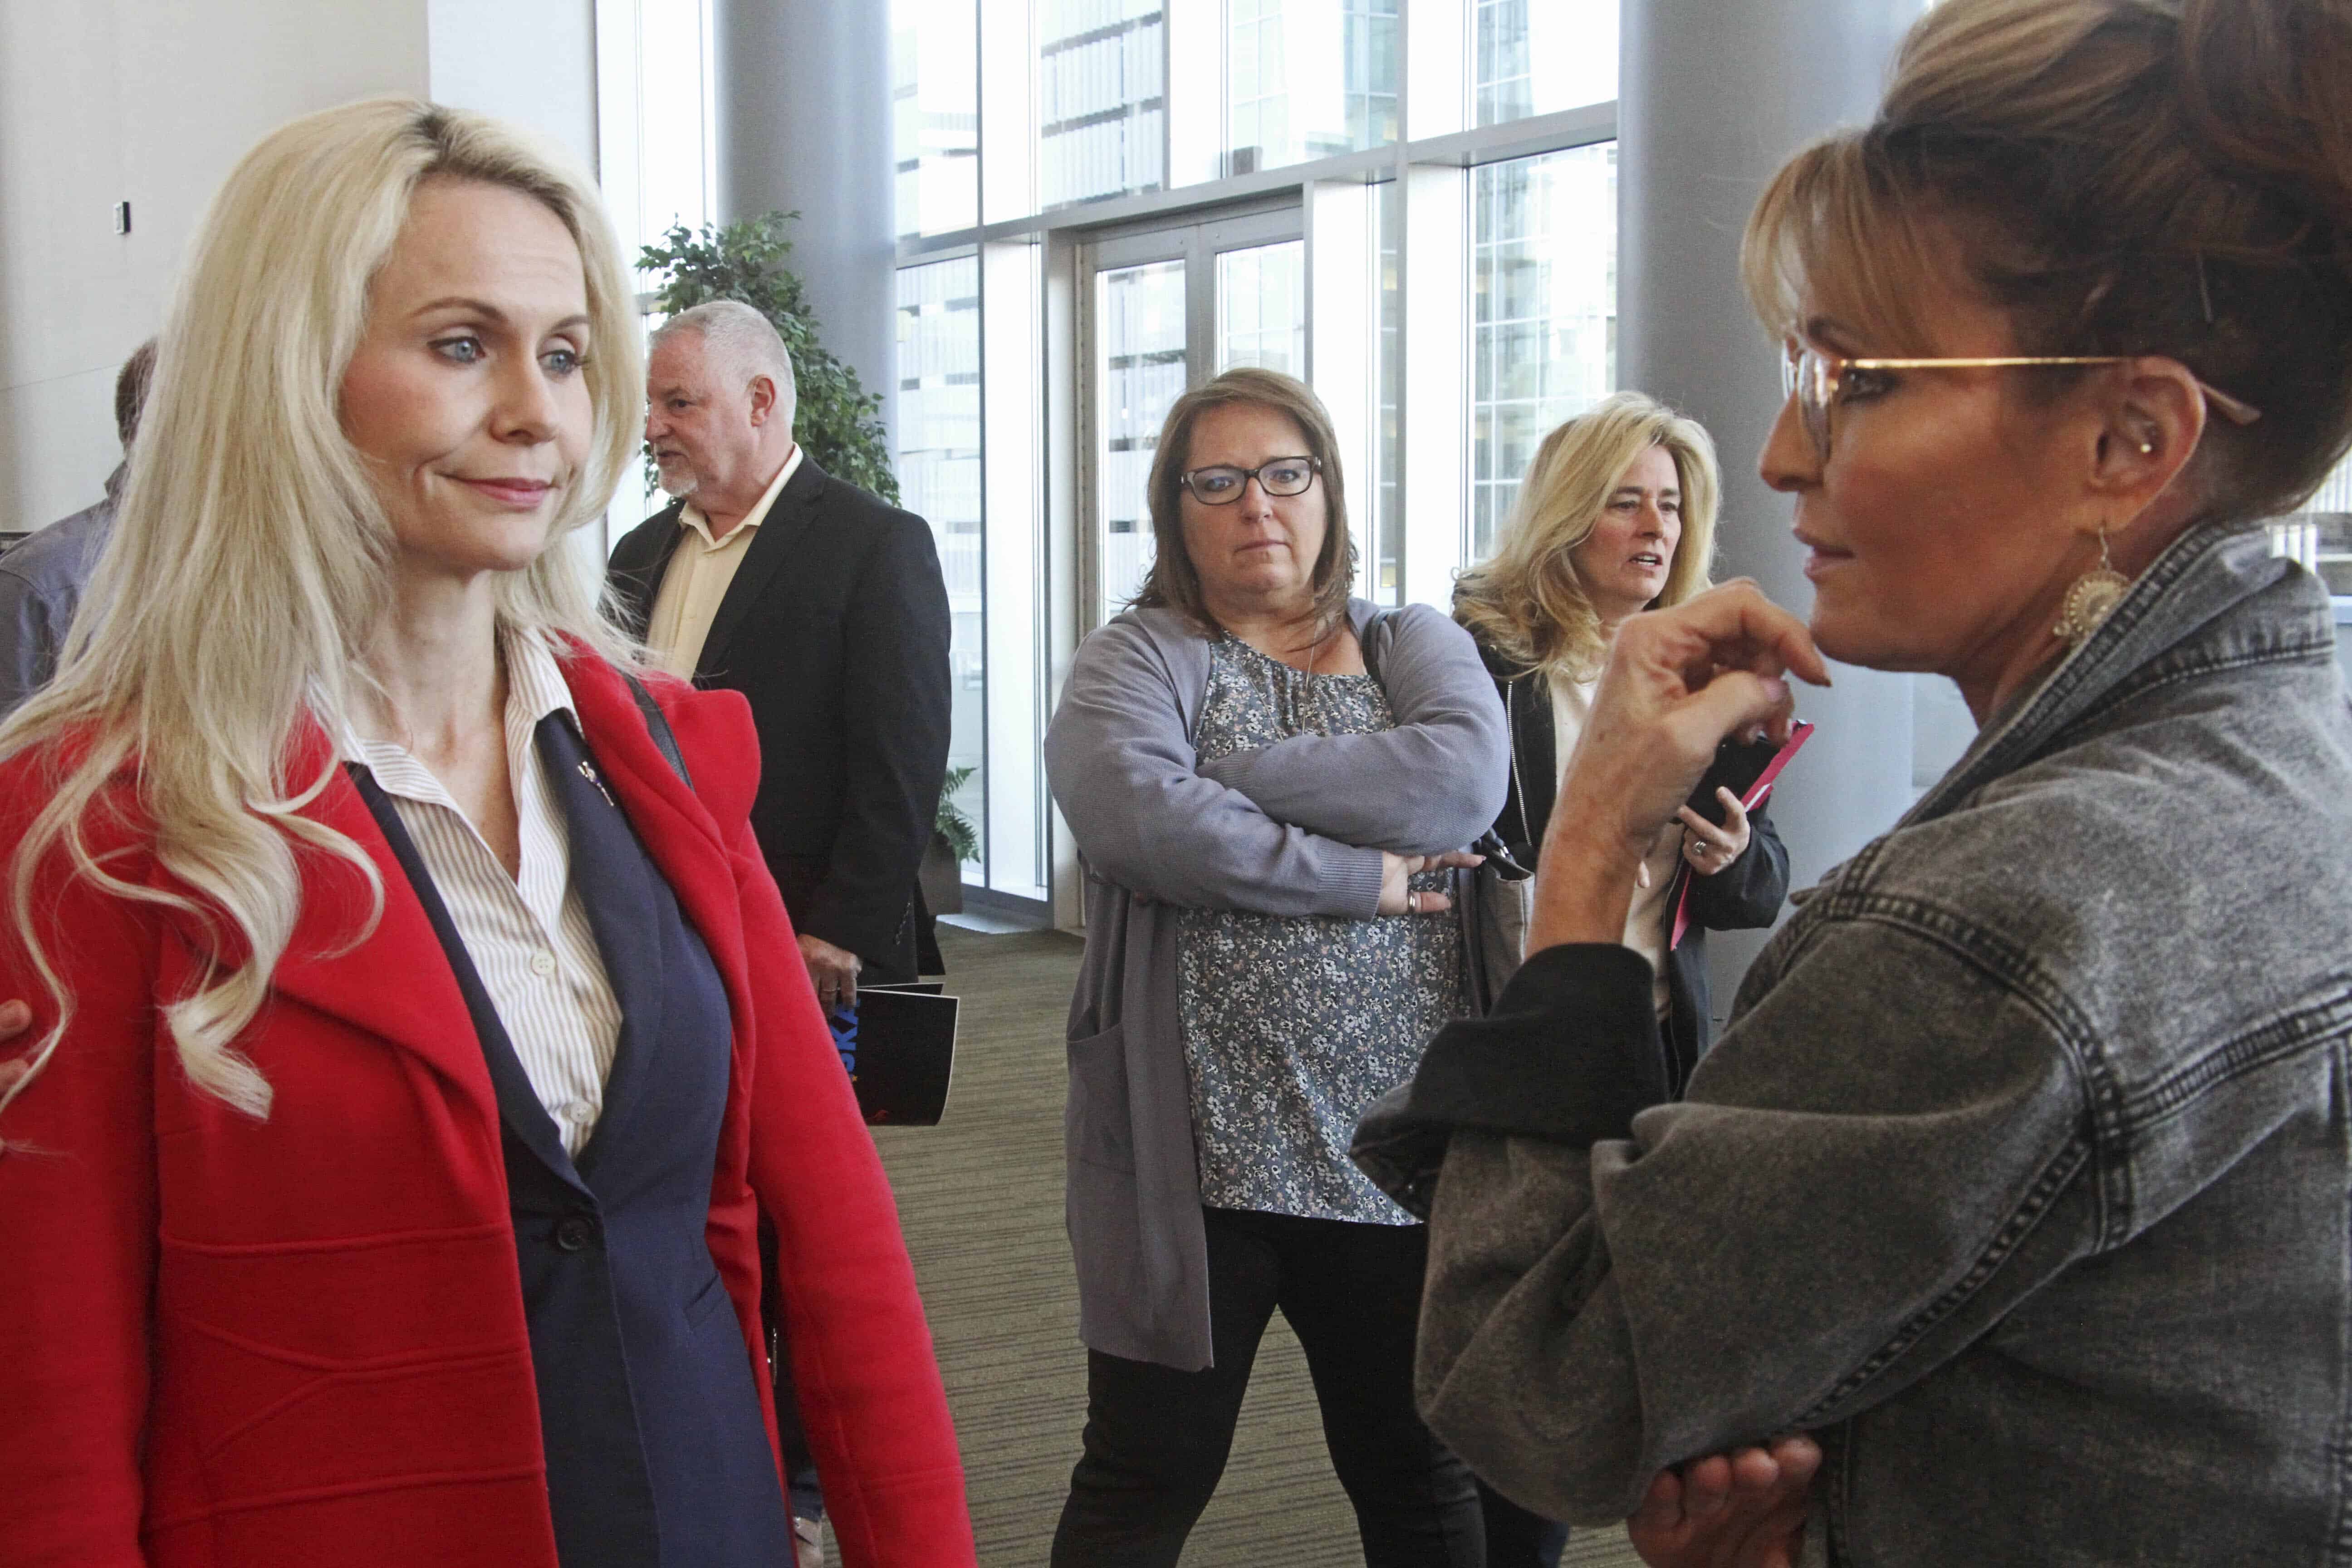 Murkowski Advances in Alaska Senate Race, Palin in House